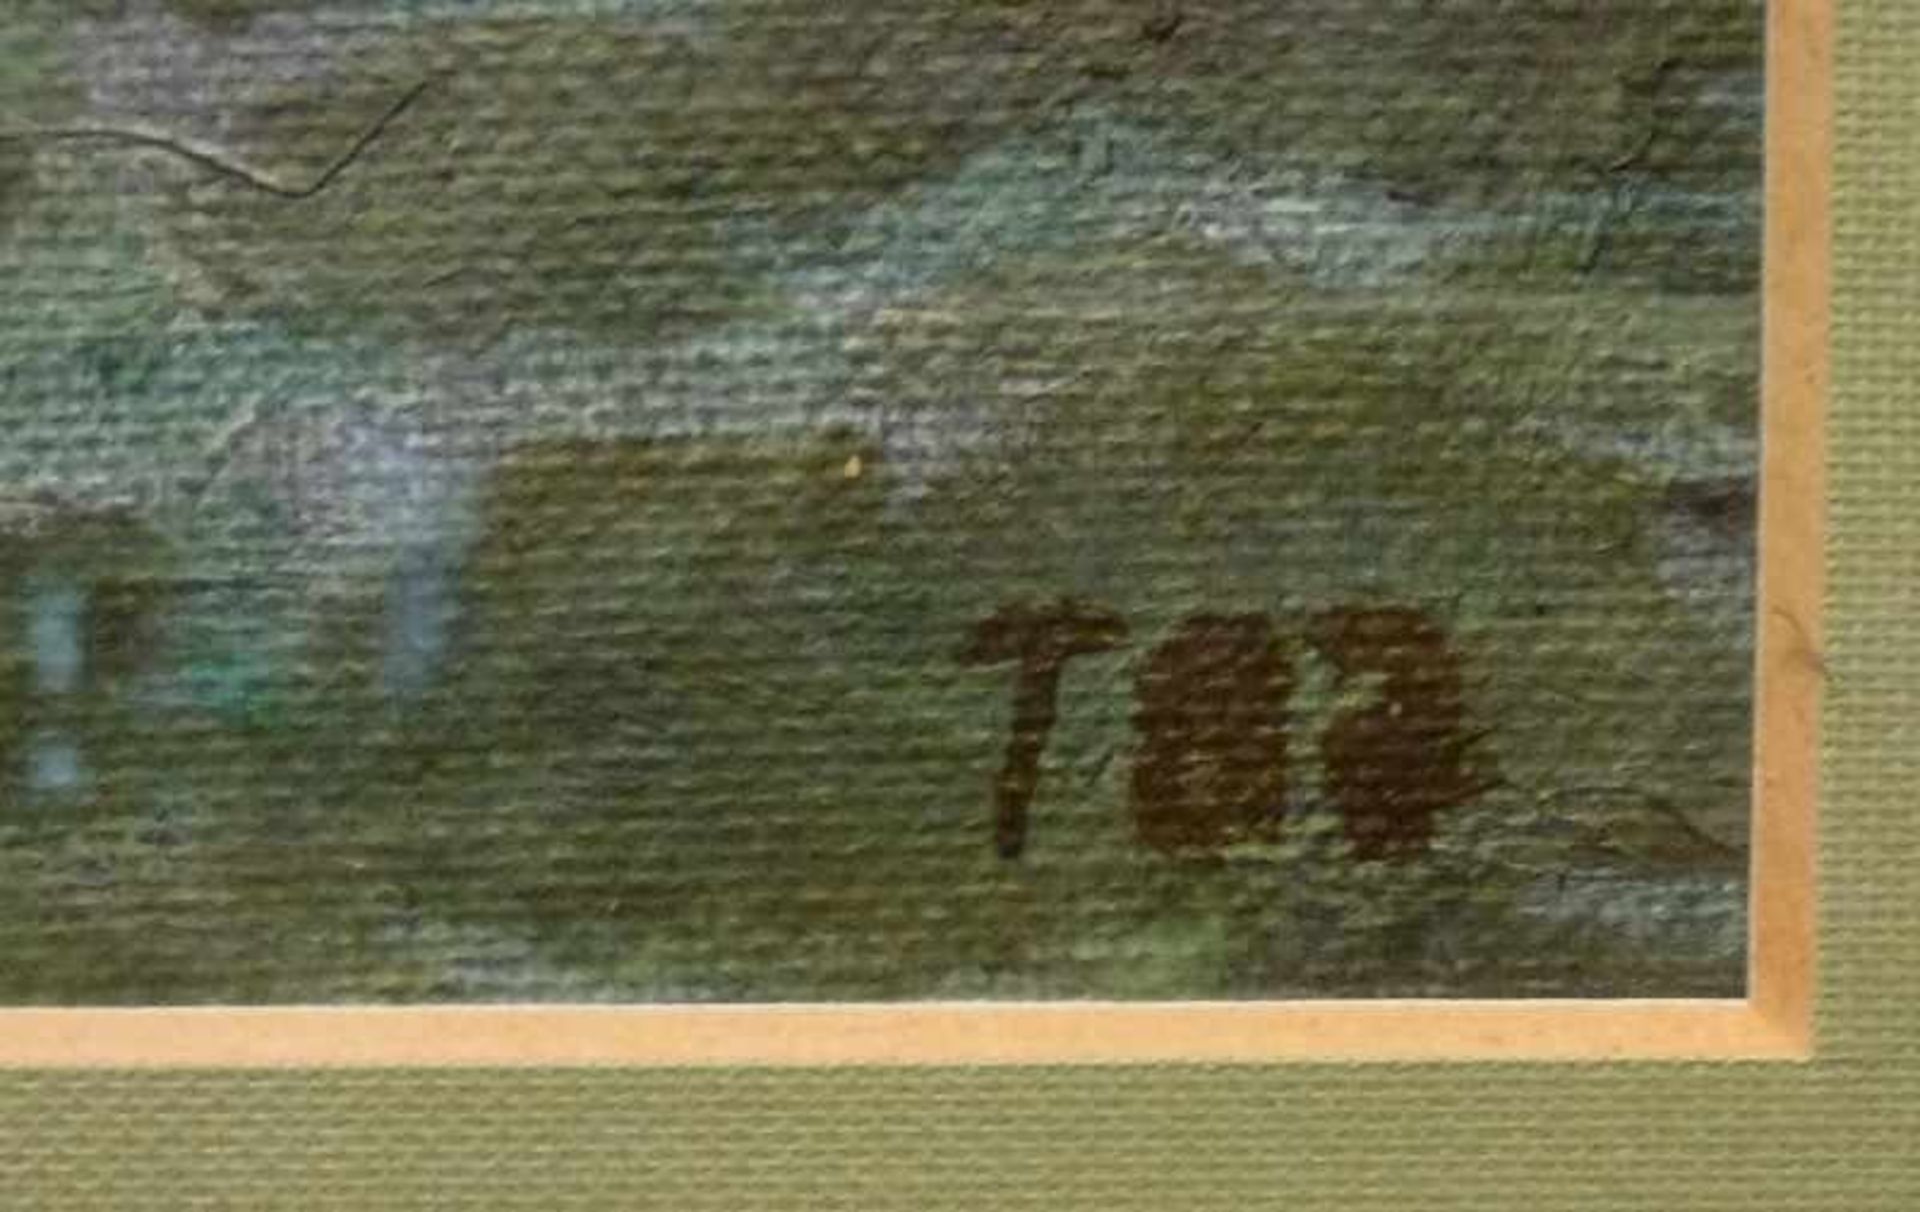 Am Teich, 1987 Öl/Lw, monogr. T 87, Mohnblumen am Ufer unter Bäumen, R, 17x23 cm - Bild 3 aus 3